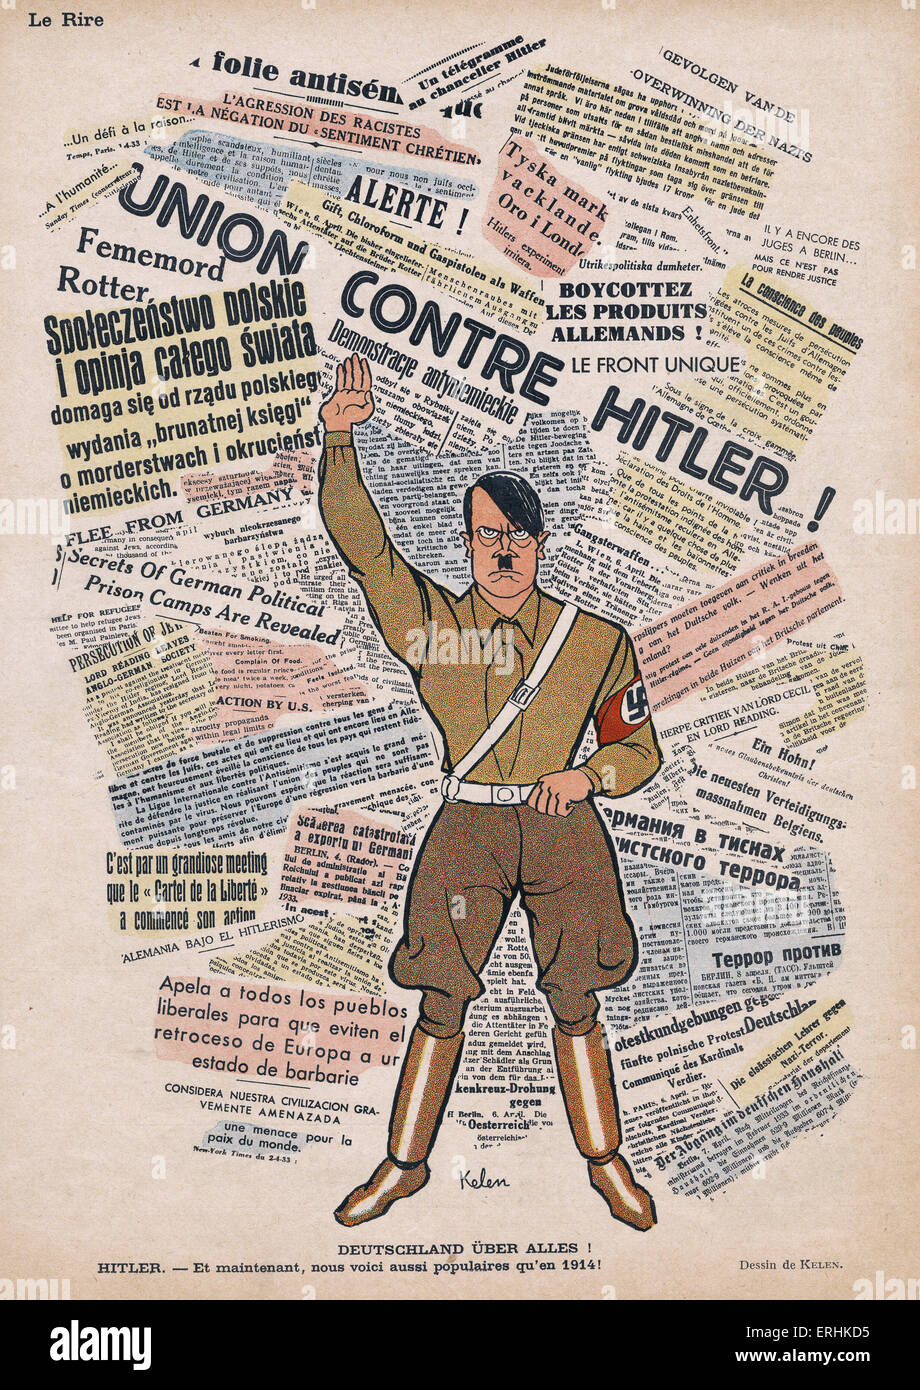 Anti-Hitler-Karikatur auf der hinteren Seite des Le Rire 29. April 1933. Bildunterschrift lautet "Deutschland Uber Alles; Hitler-et maintenant Stockfoto